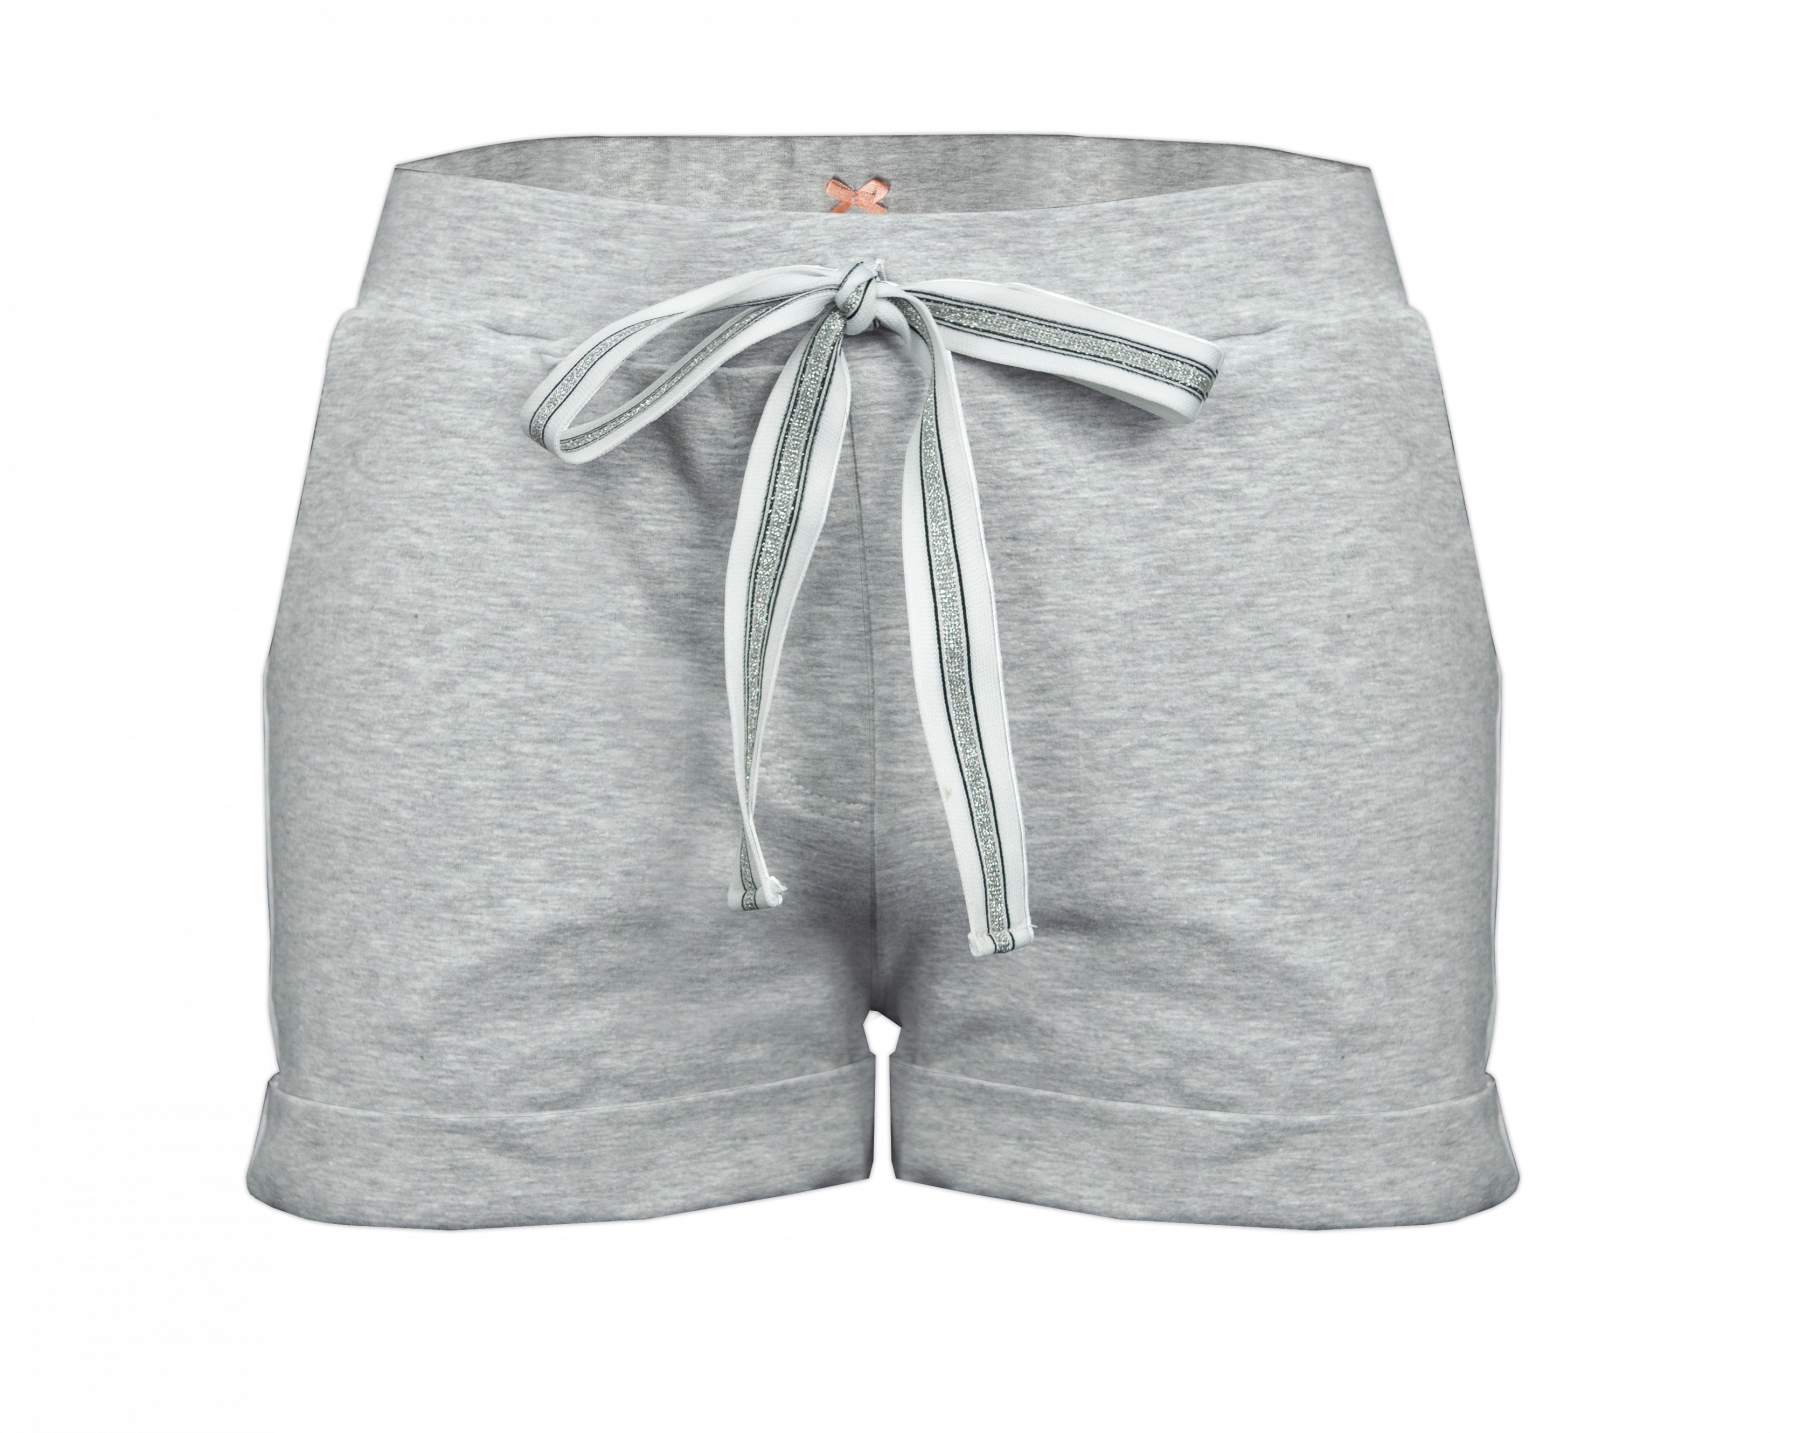 Dámské šortky  - melír světlo šedivý L-XL